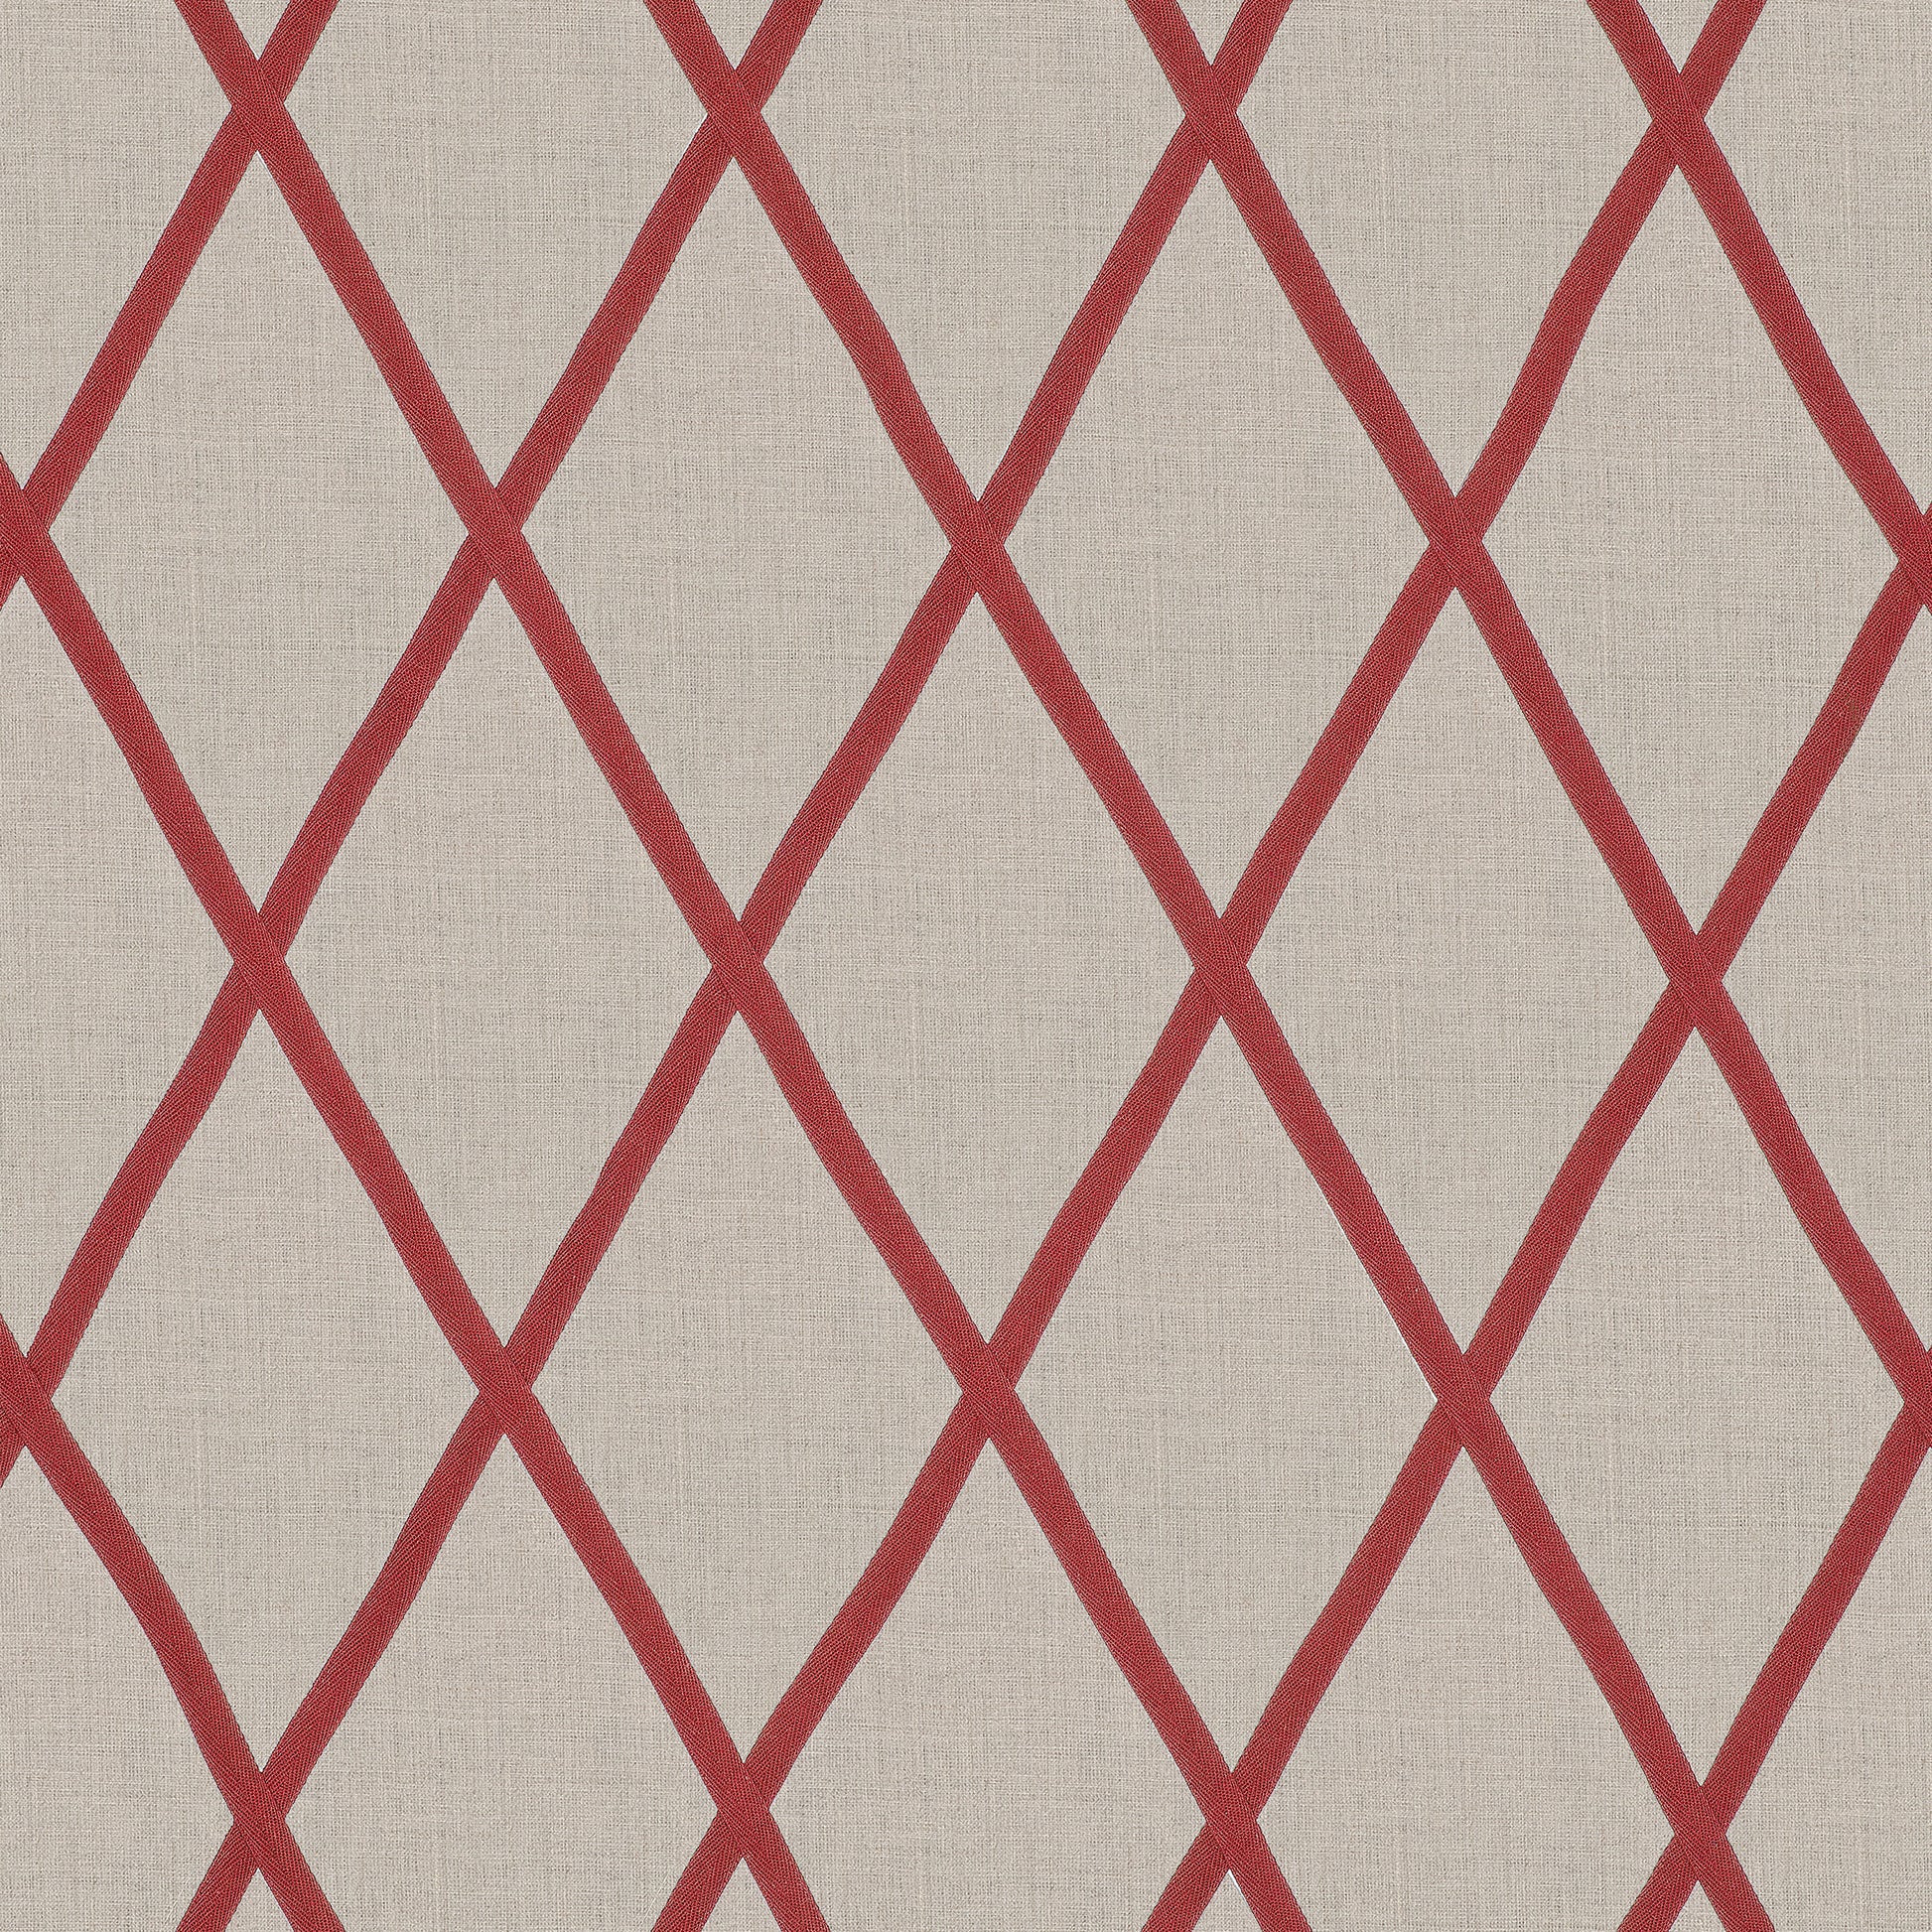 Purchase  Ann French Fabric SKU# AW78710  pattern name  Tarascon Trellis Applique